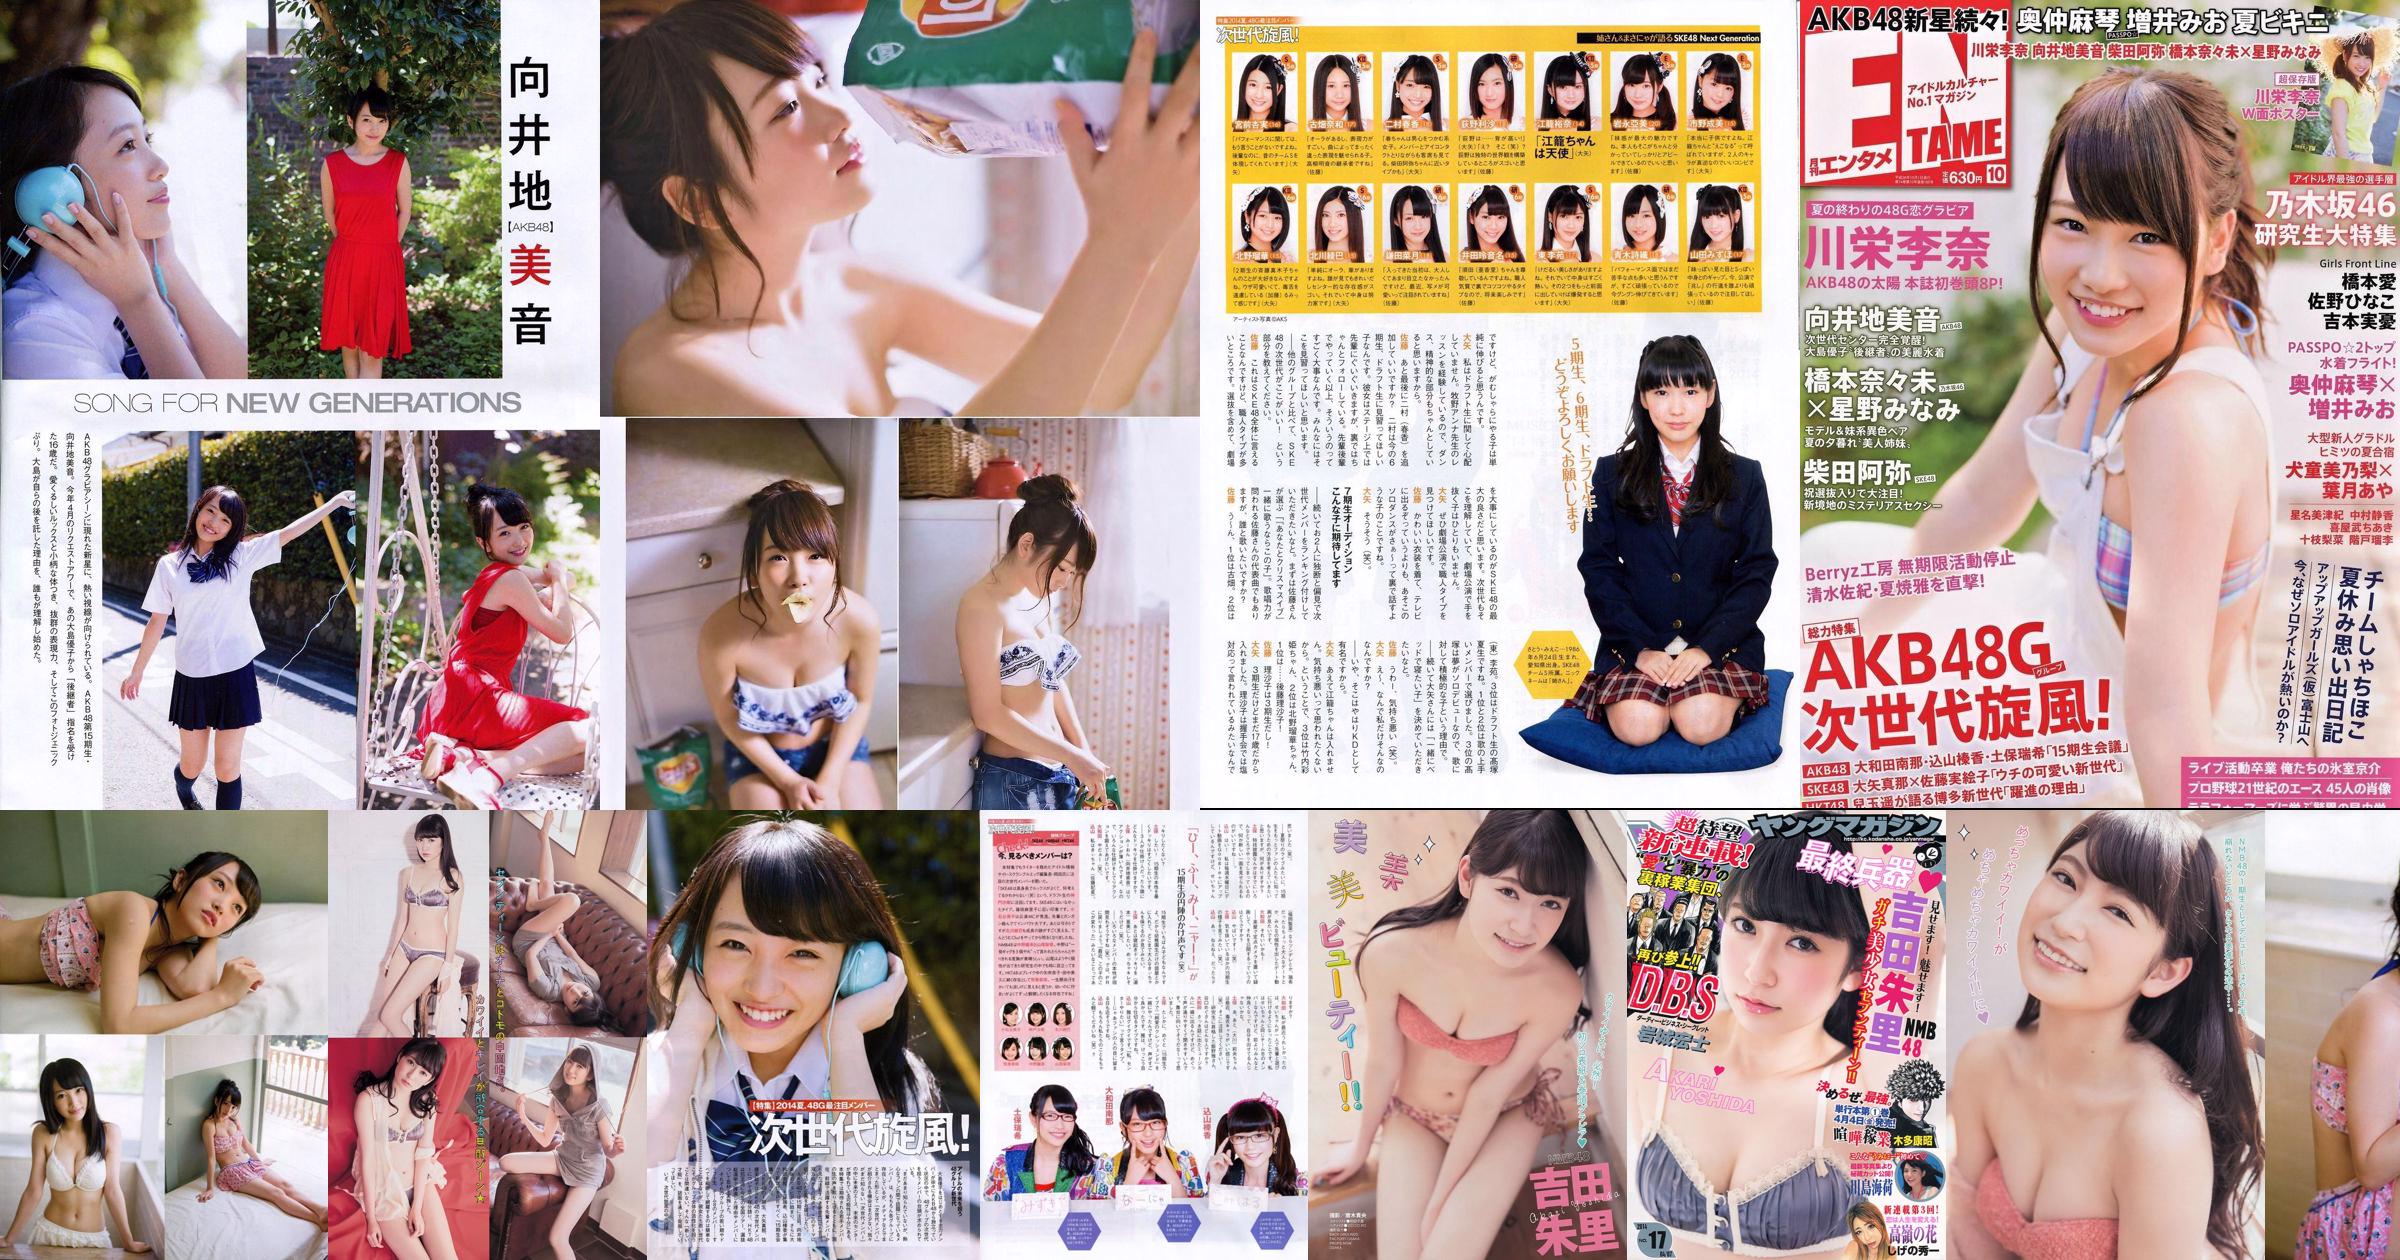 [Young Magazine] Akari Yoshida Umika Kawashima 2014 No.17 Photograph No.478ad2 Page 1